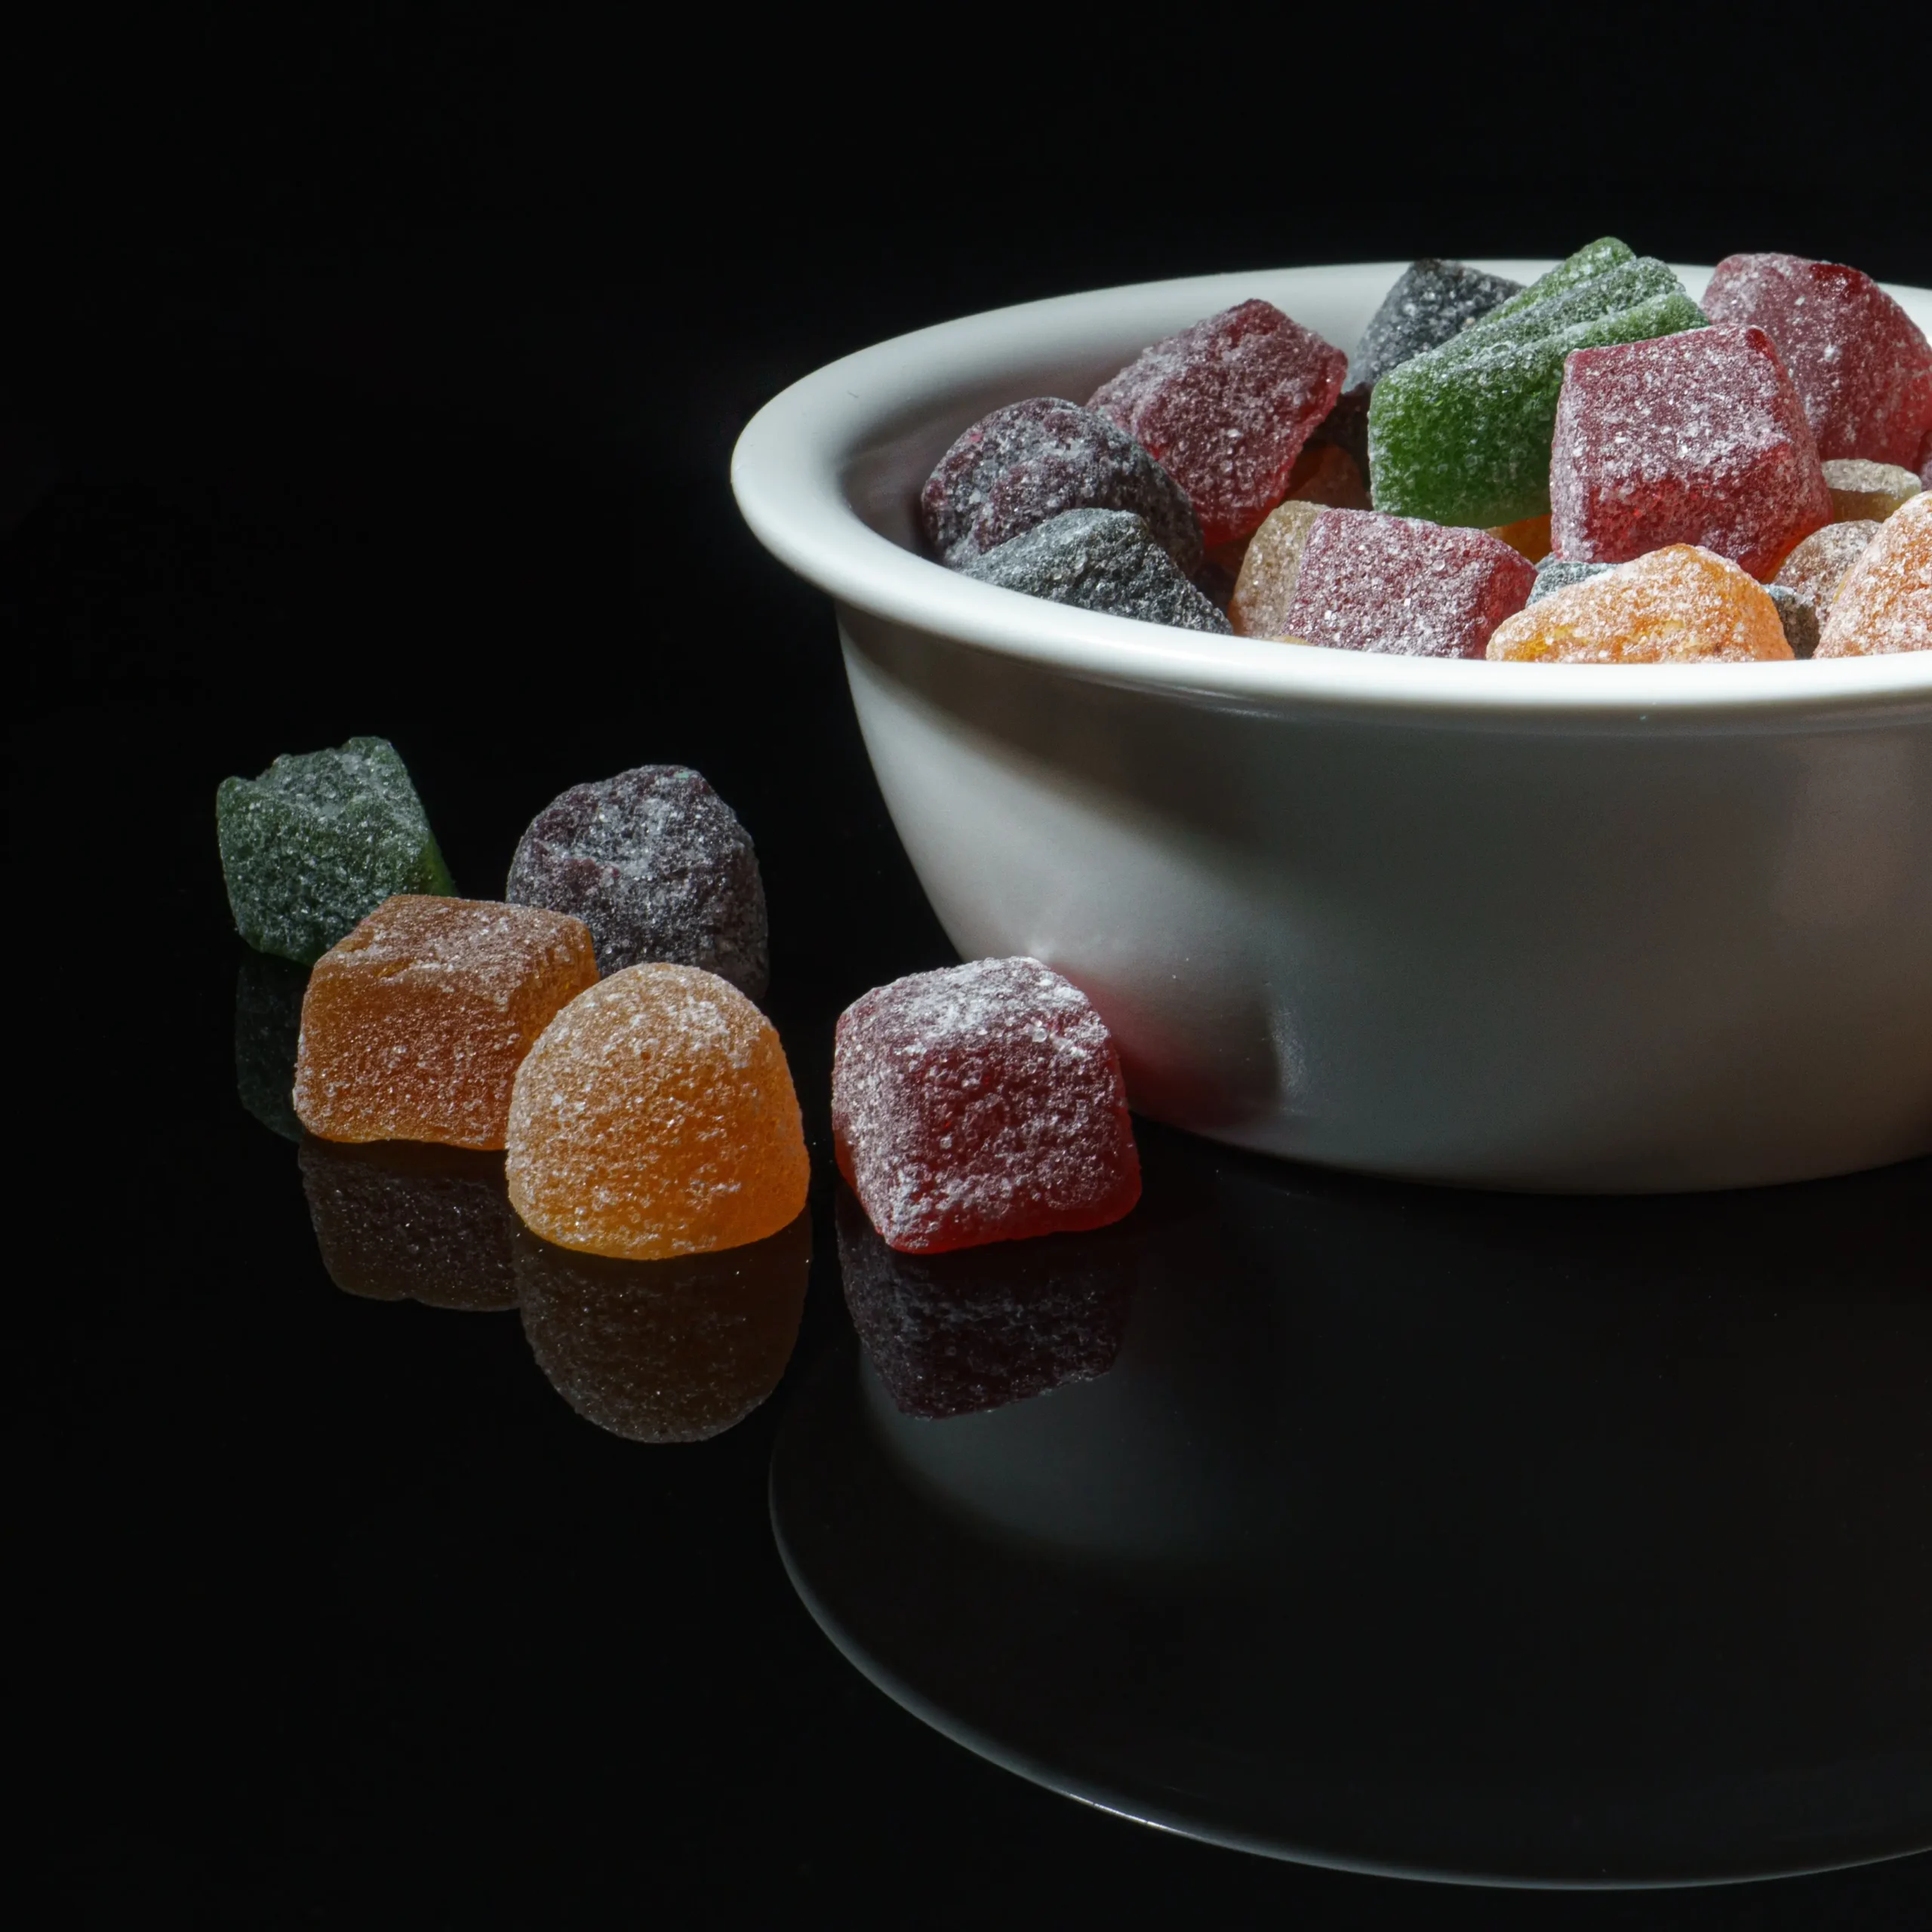 Bonbons sans sucre : le droit à la gourmandise ?